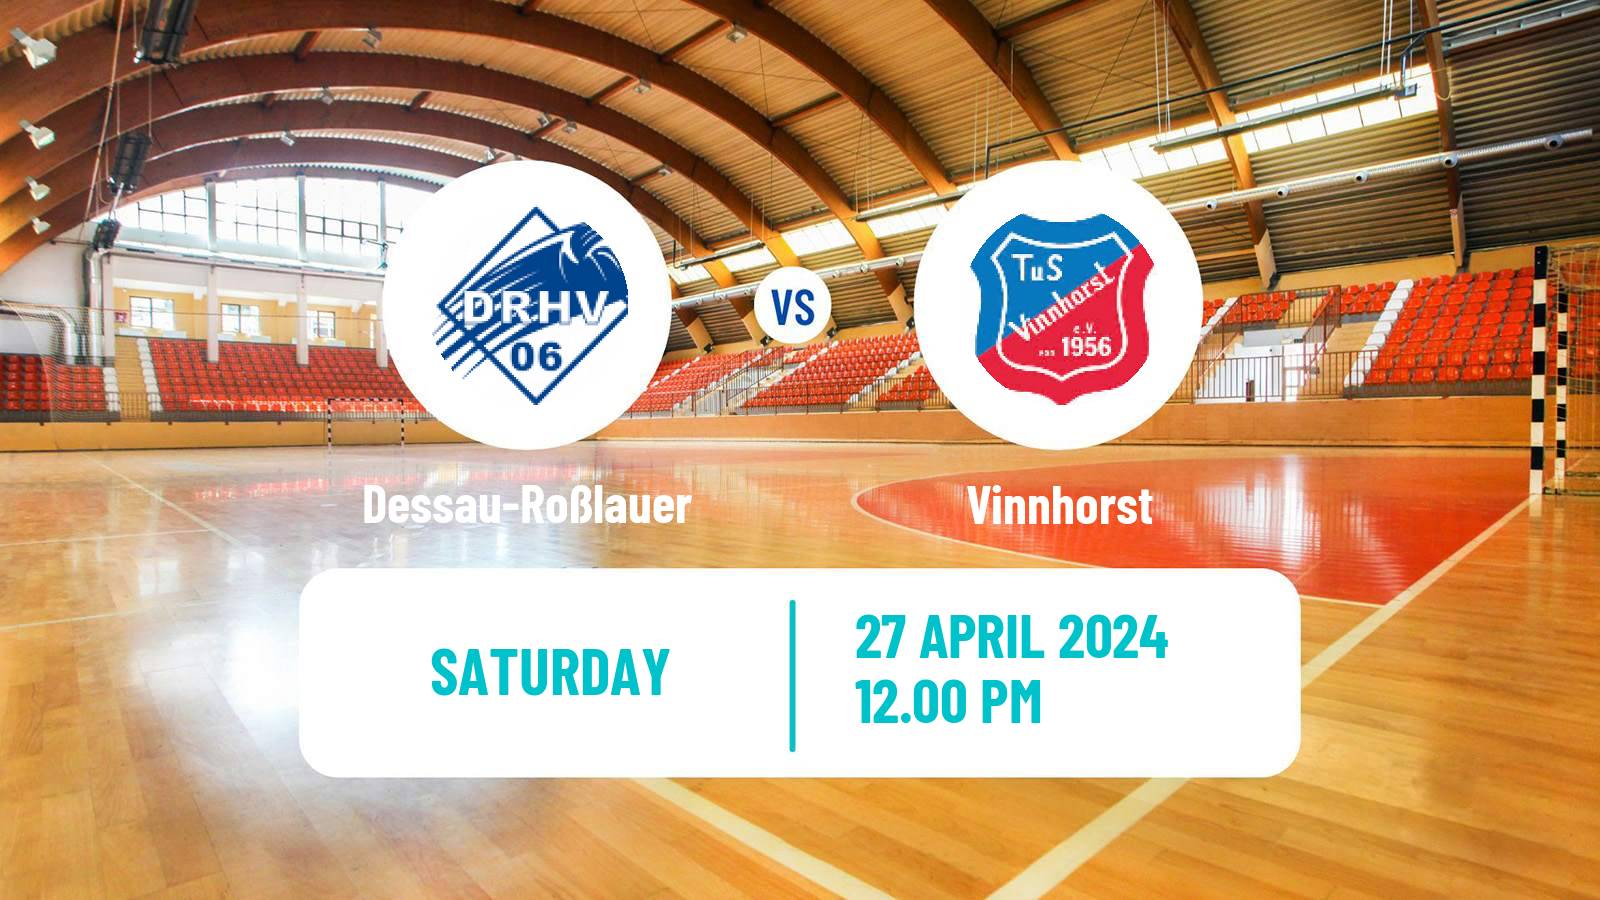 Handball German 2 Bundesliga Handball Dessau-Roßlauer - Vinnhorst